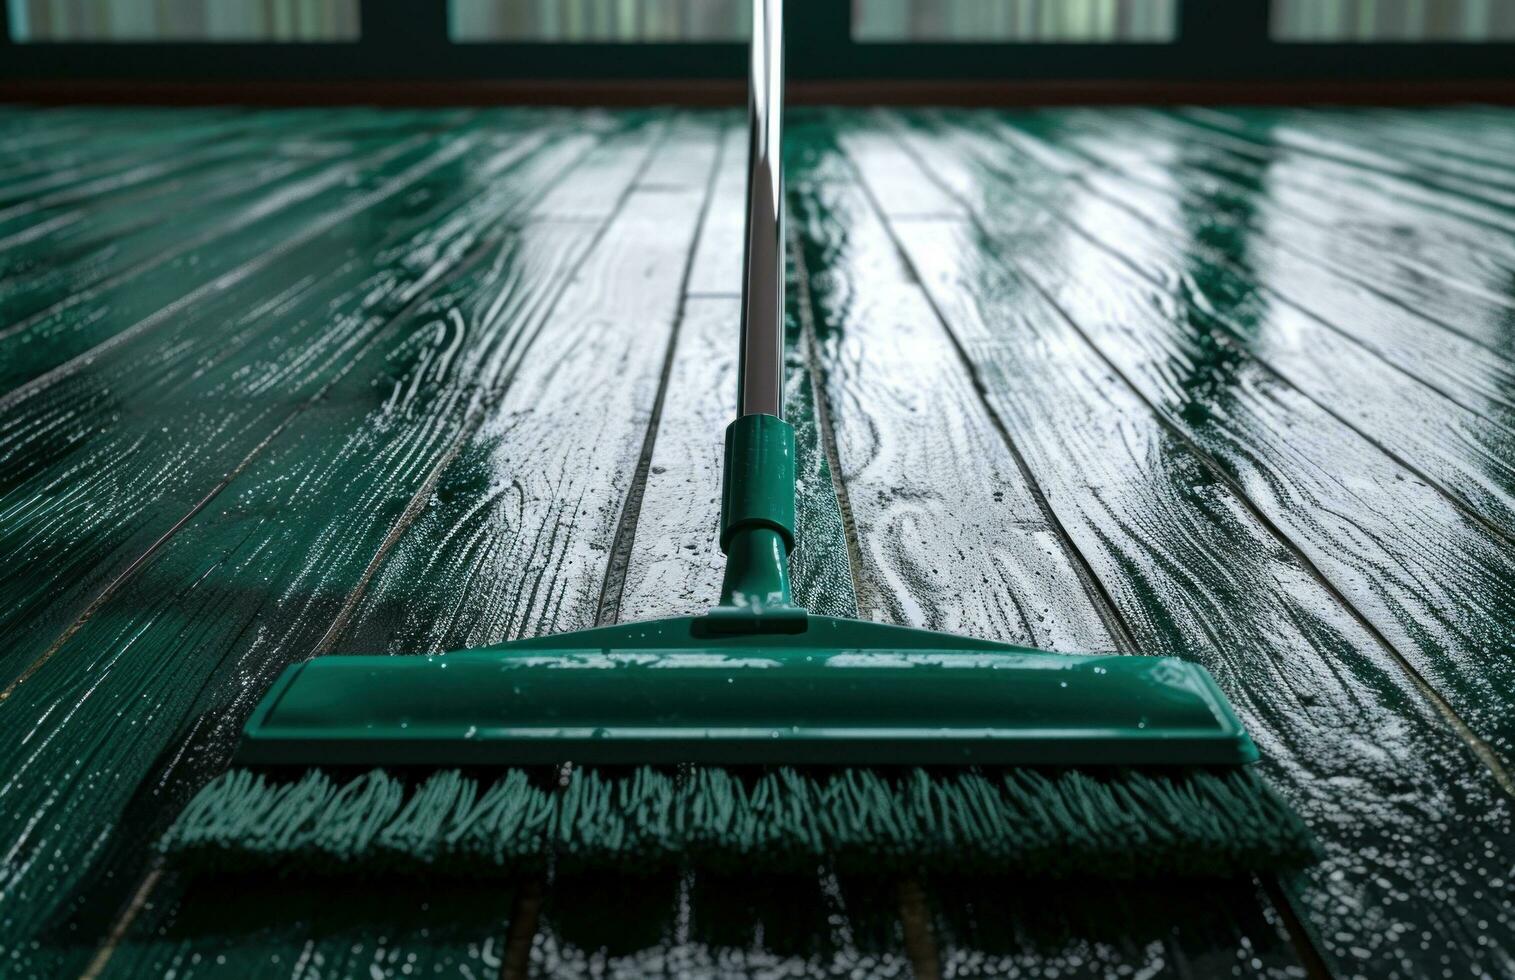 ai genererad golv mopp med mjuk borst en rengöring verktyg som kan föra liv till de hårt träslag golv foto